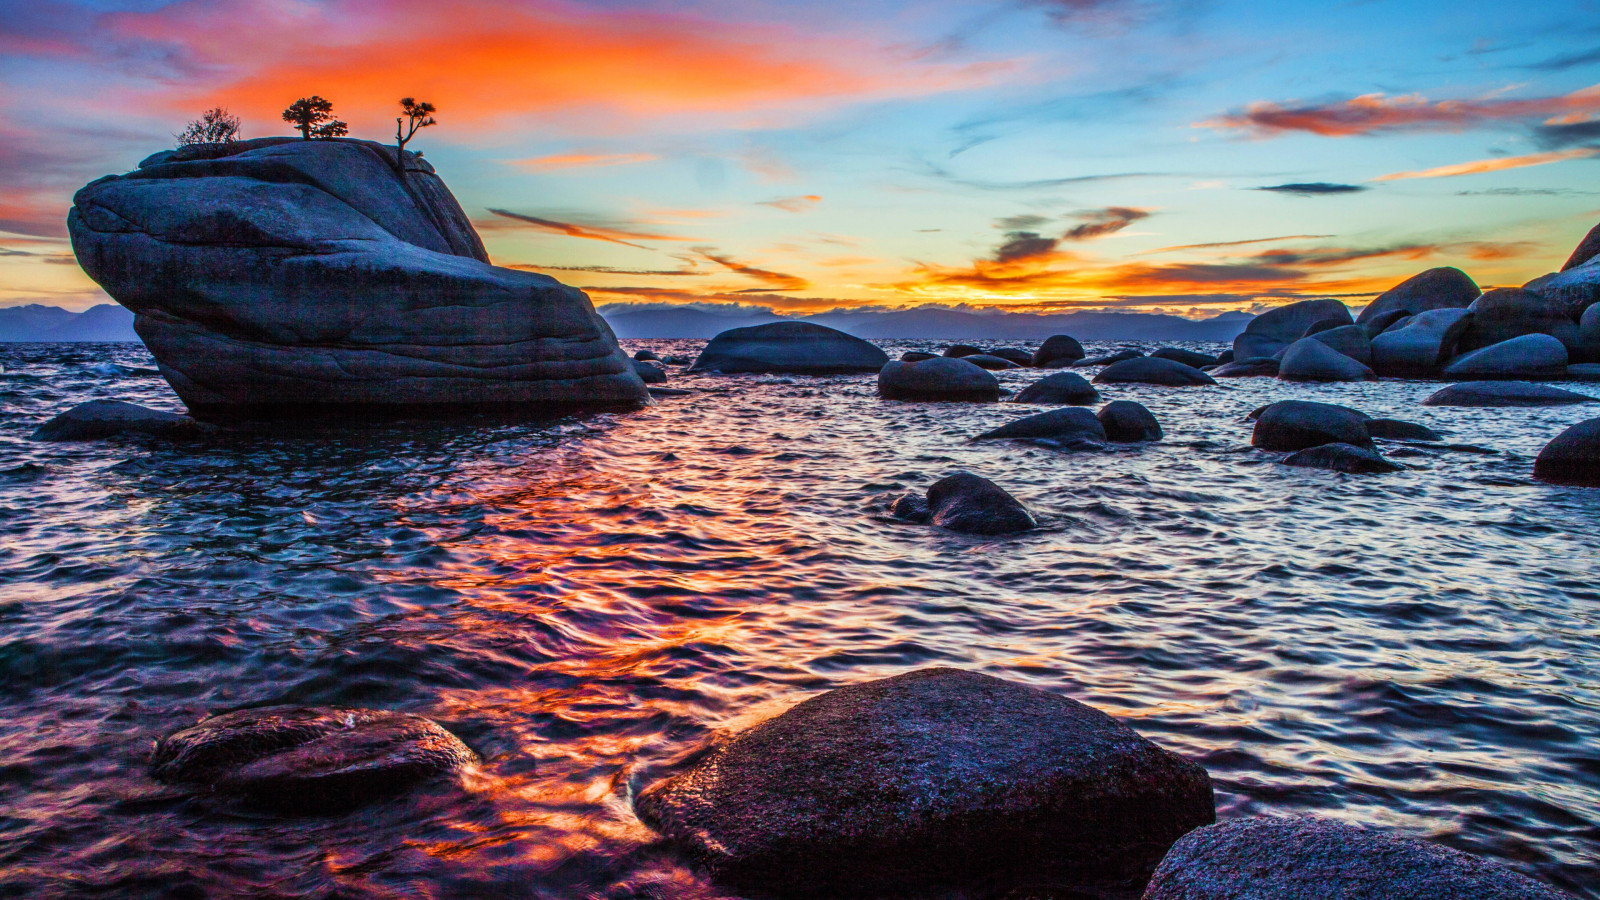 Bonsai Rock sunset at Lake Tahoe wallpaper 1600x900